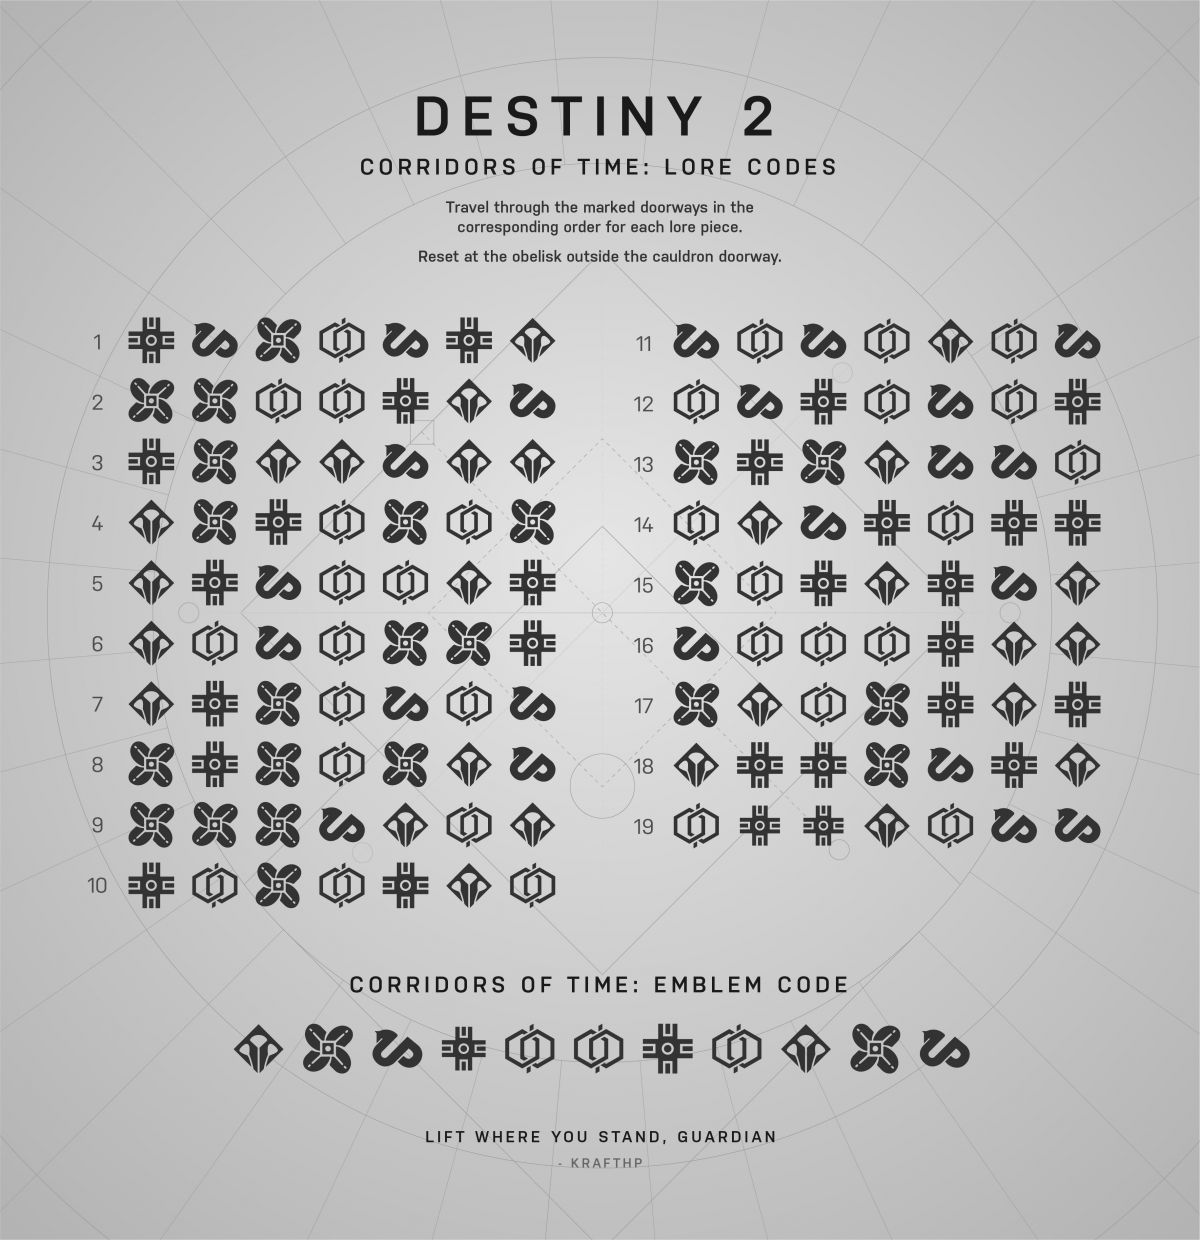 Великая головоломка Destiny 2 разгадана. Потребовалось сотрудничество тысяч игроков!